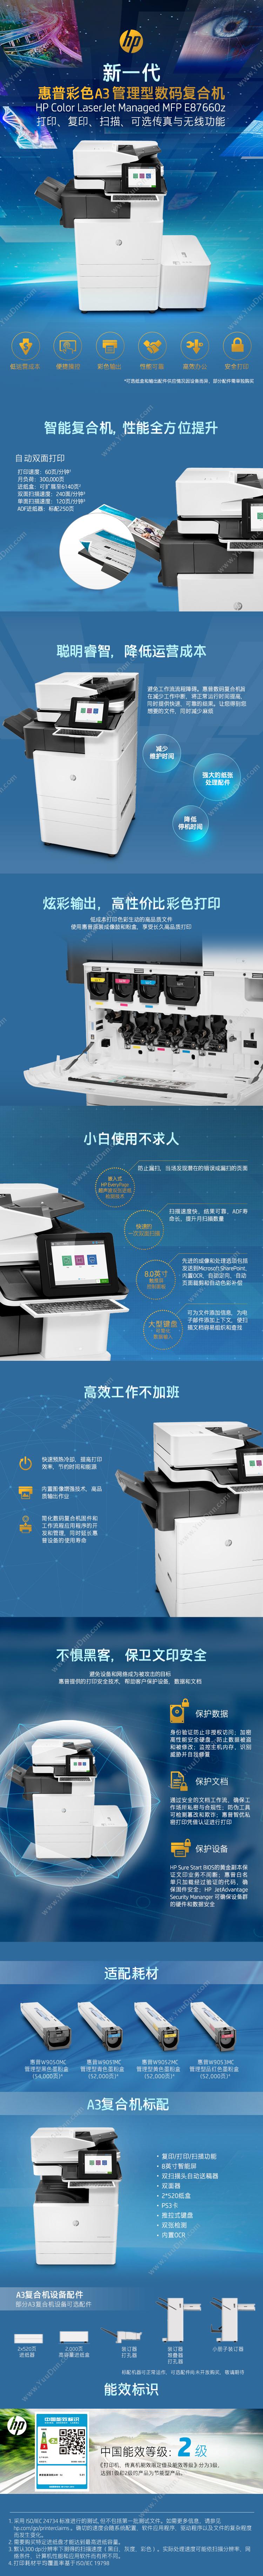 惠普 HP A3X3A92AE87660z(带服务) 激光复合打印机